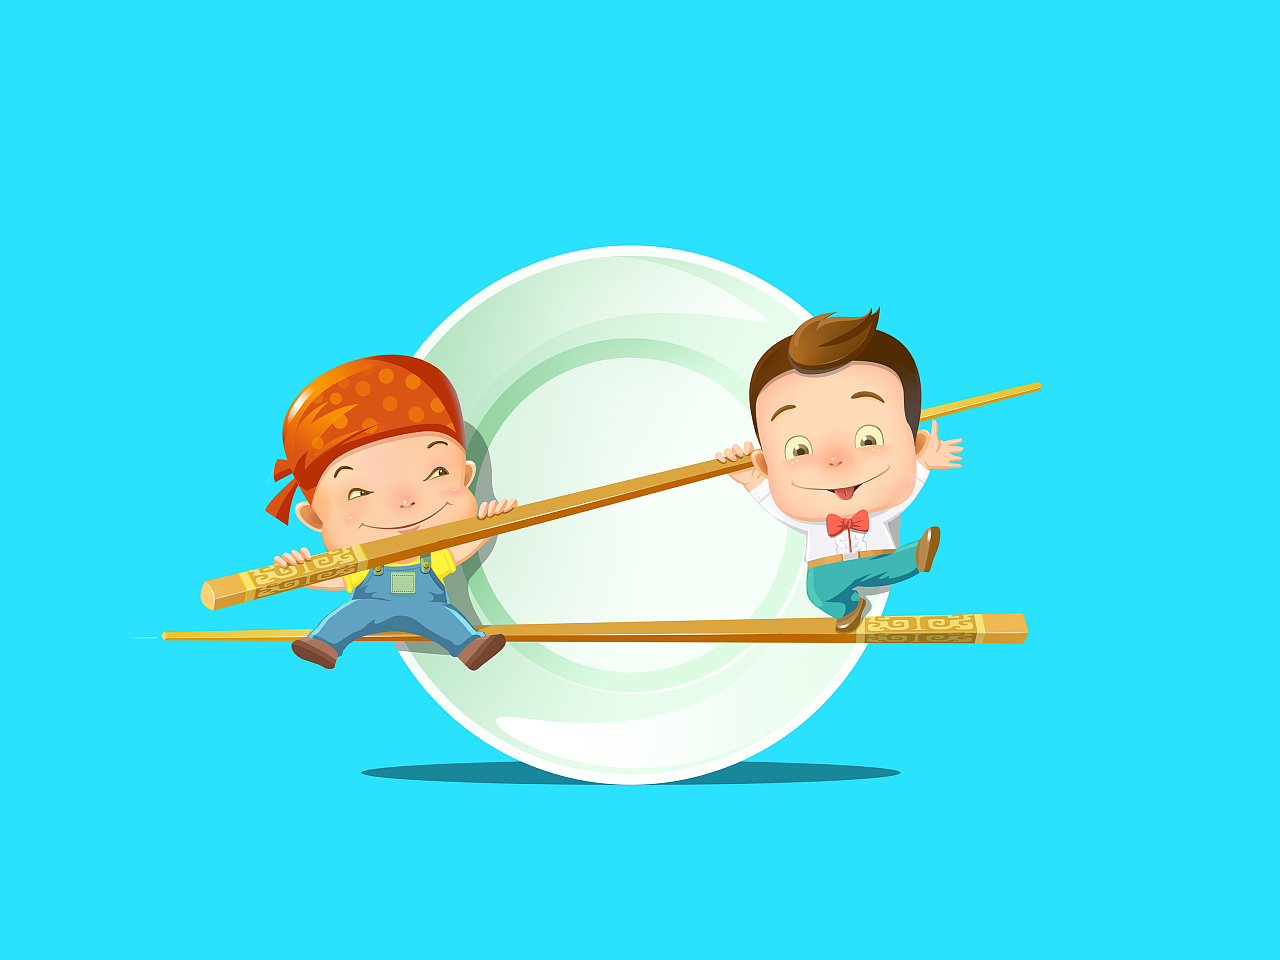 新款日韩zakka创意木质筷子 可爱卡通头型实用木筷 家用儿童筷子-阿里巴巴